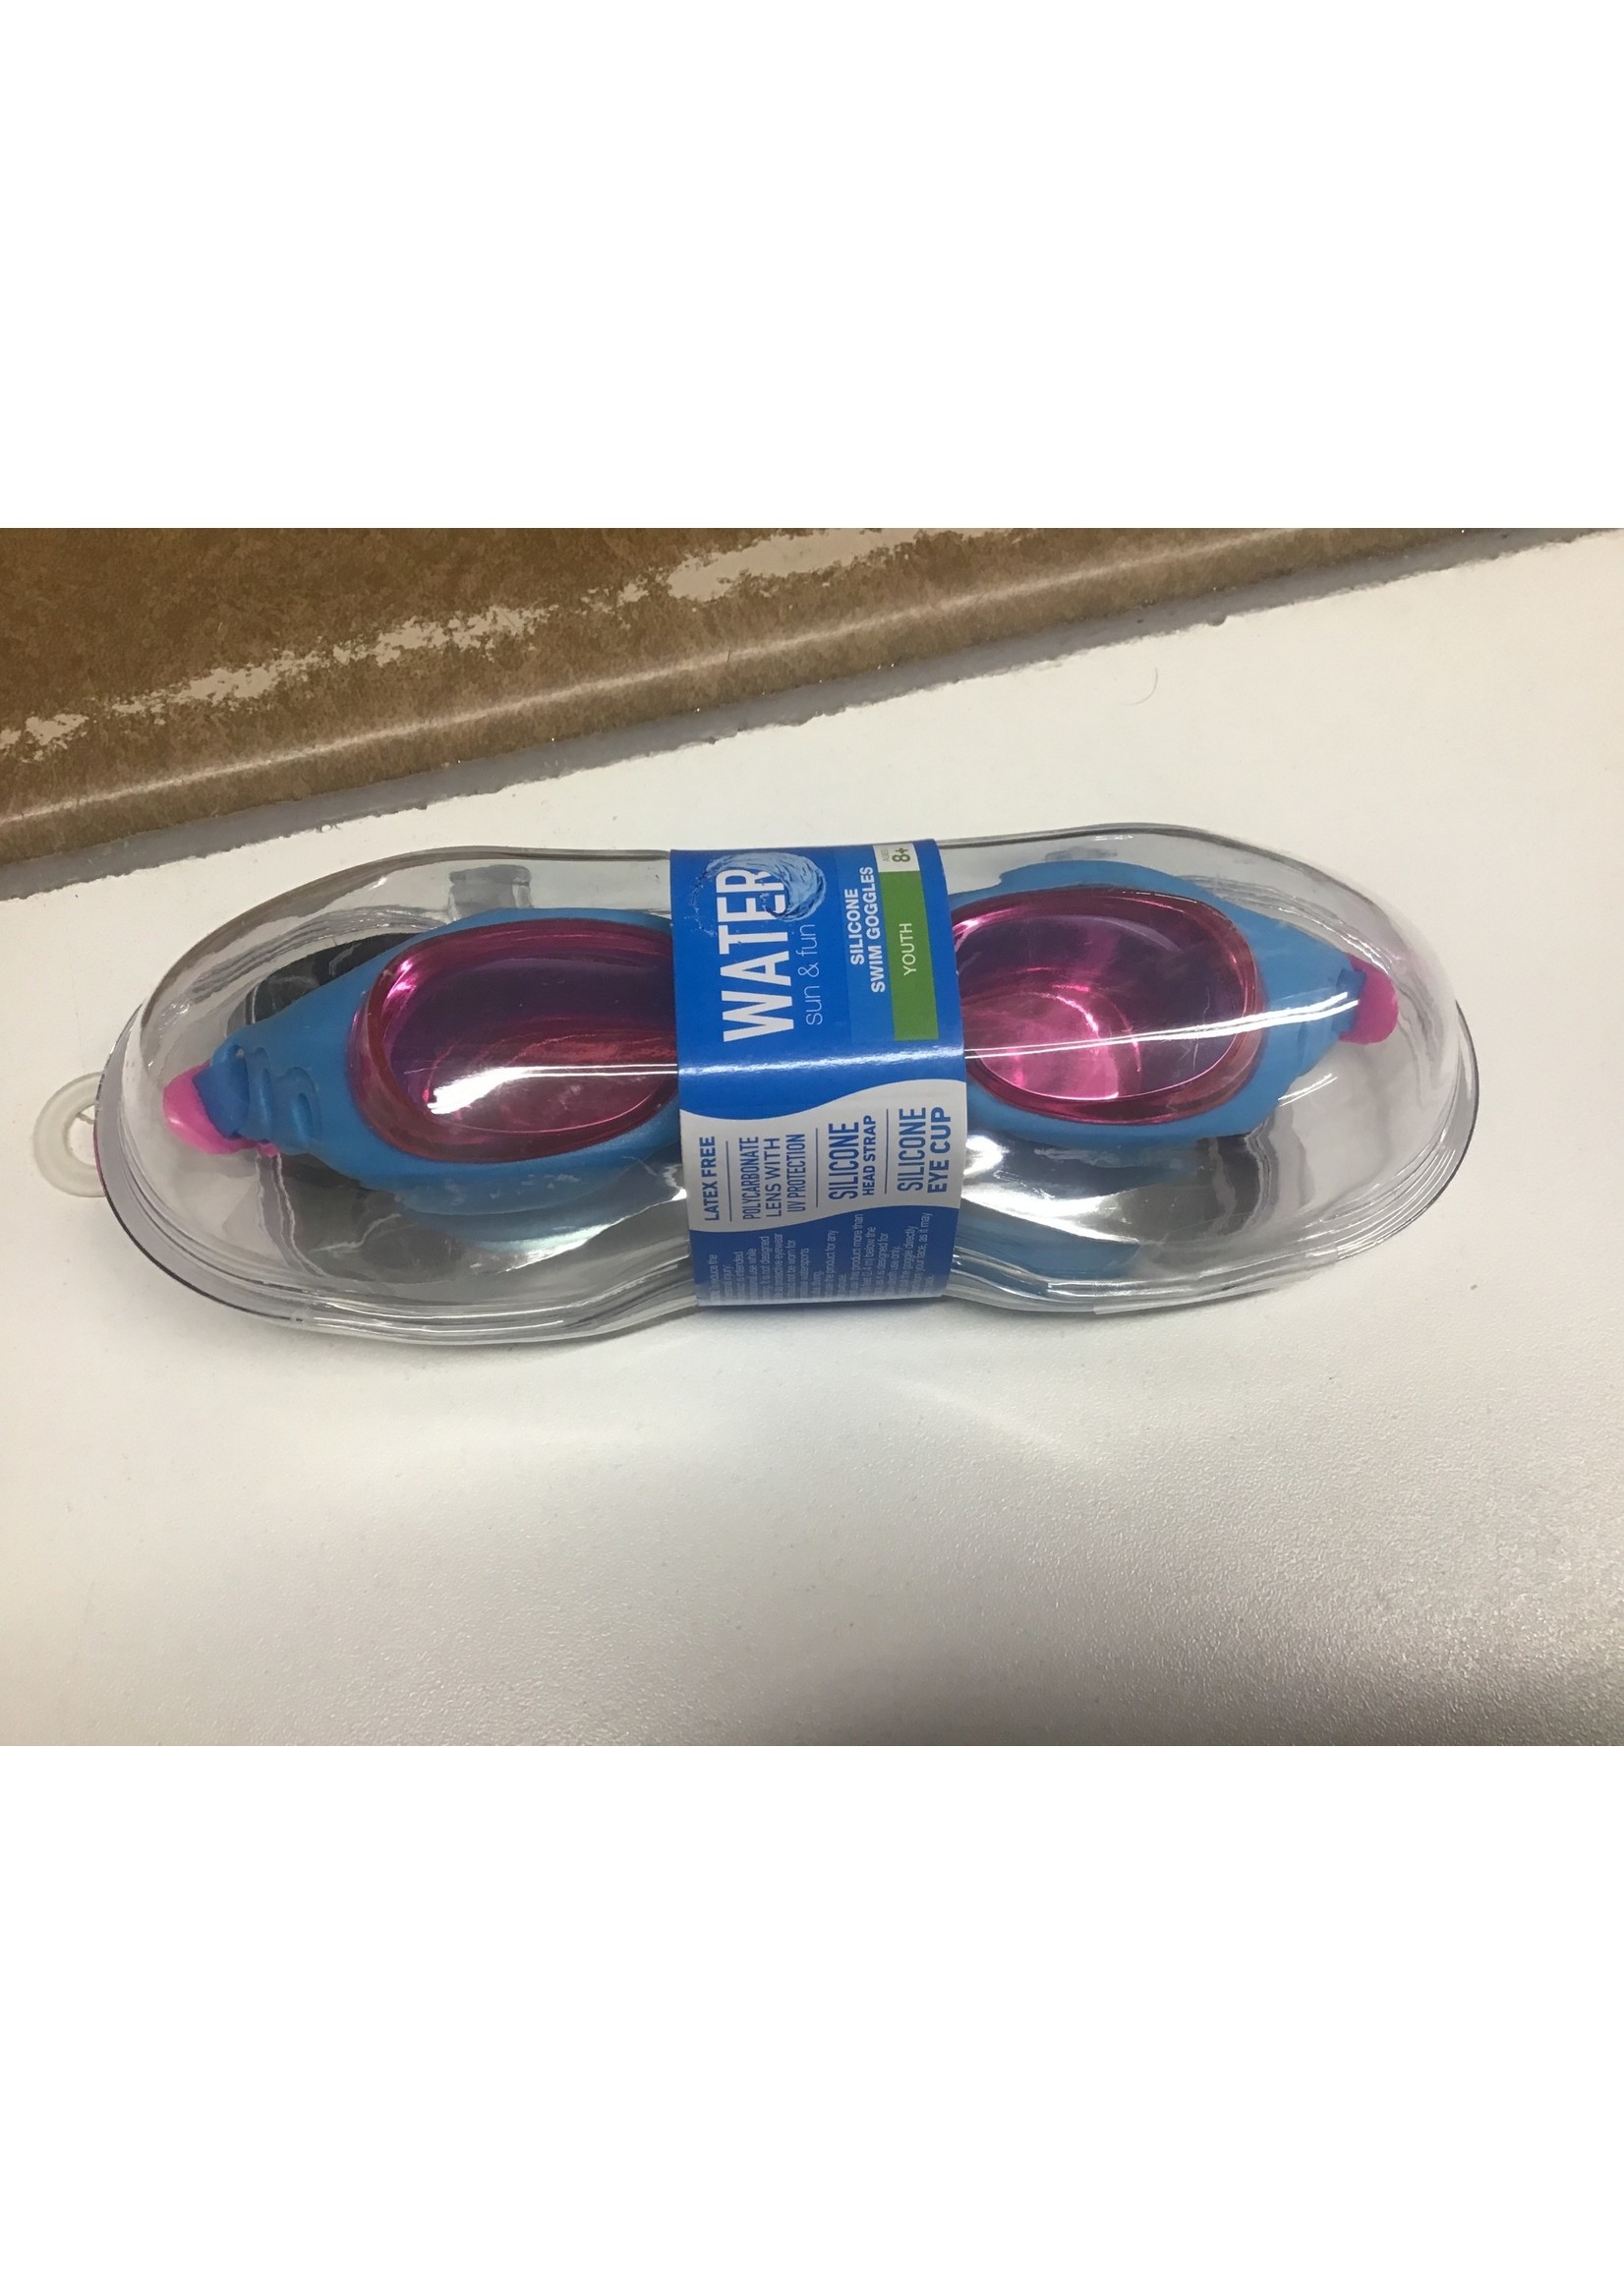 Water Sun & Fun silicone swim goggles youth blue pink